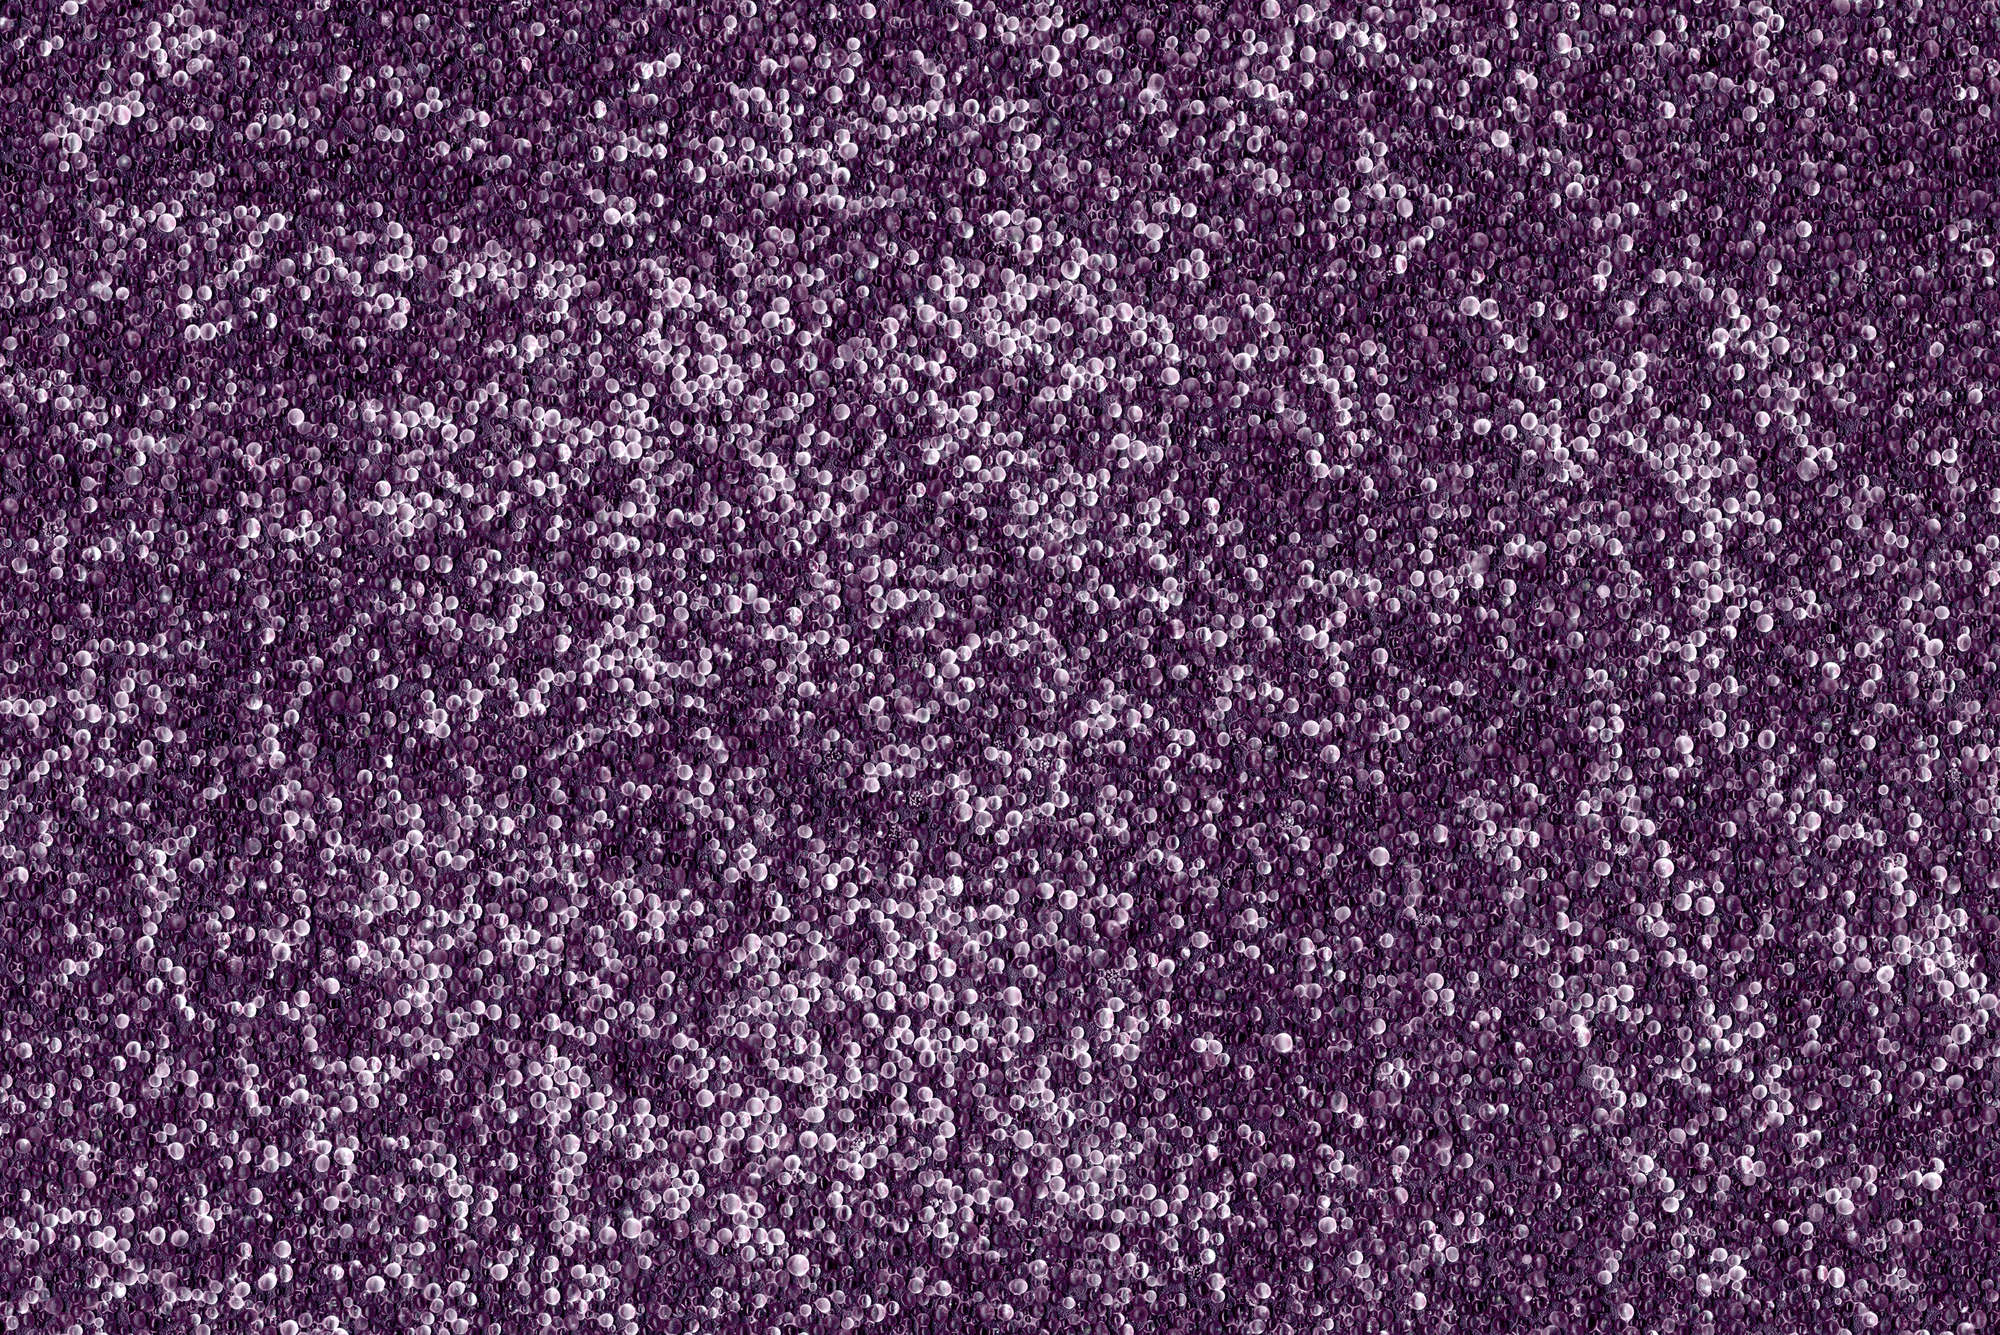             Digital behang veel kleine knikkers in paars - Mat glad vlies
        